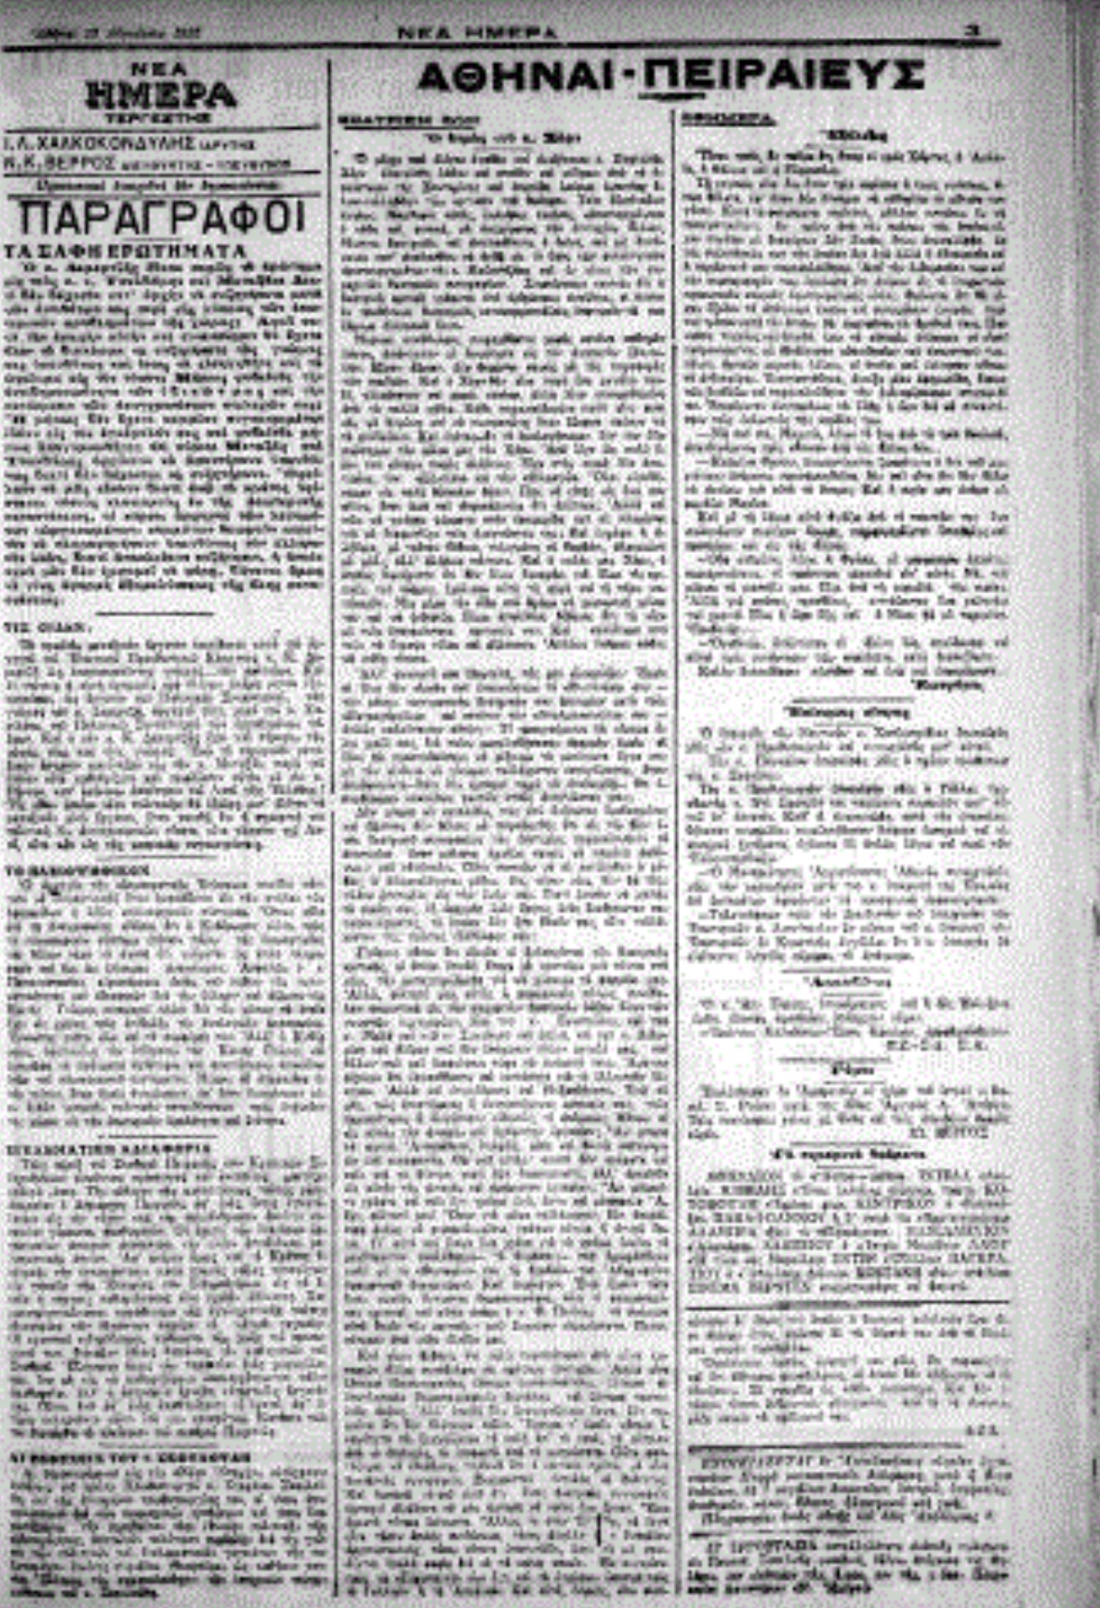 Η τρίτη σελίδα της εφημερίδας της Αθήνας, “Νέα Ημέρα”, 18/8/1925, με την ανακοίνωση των αρραβώνων της Έρσης.